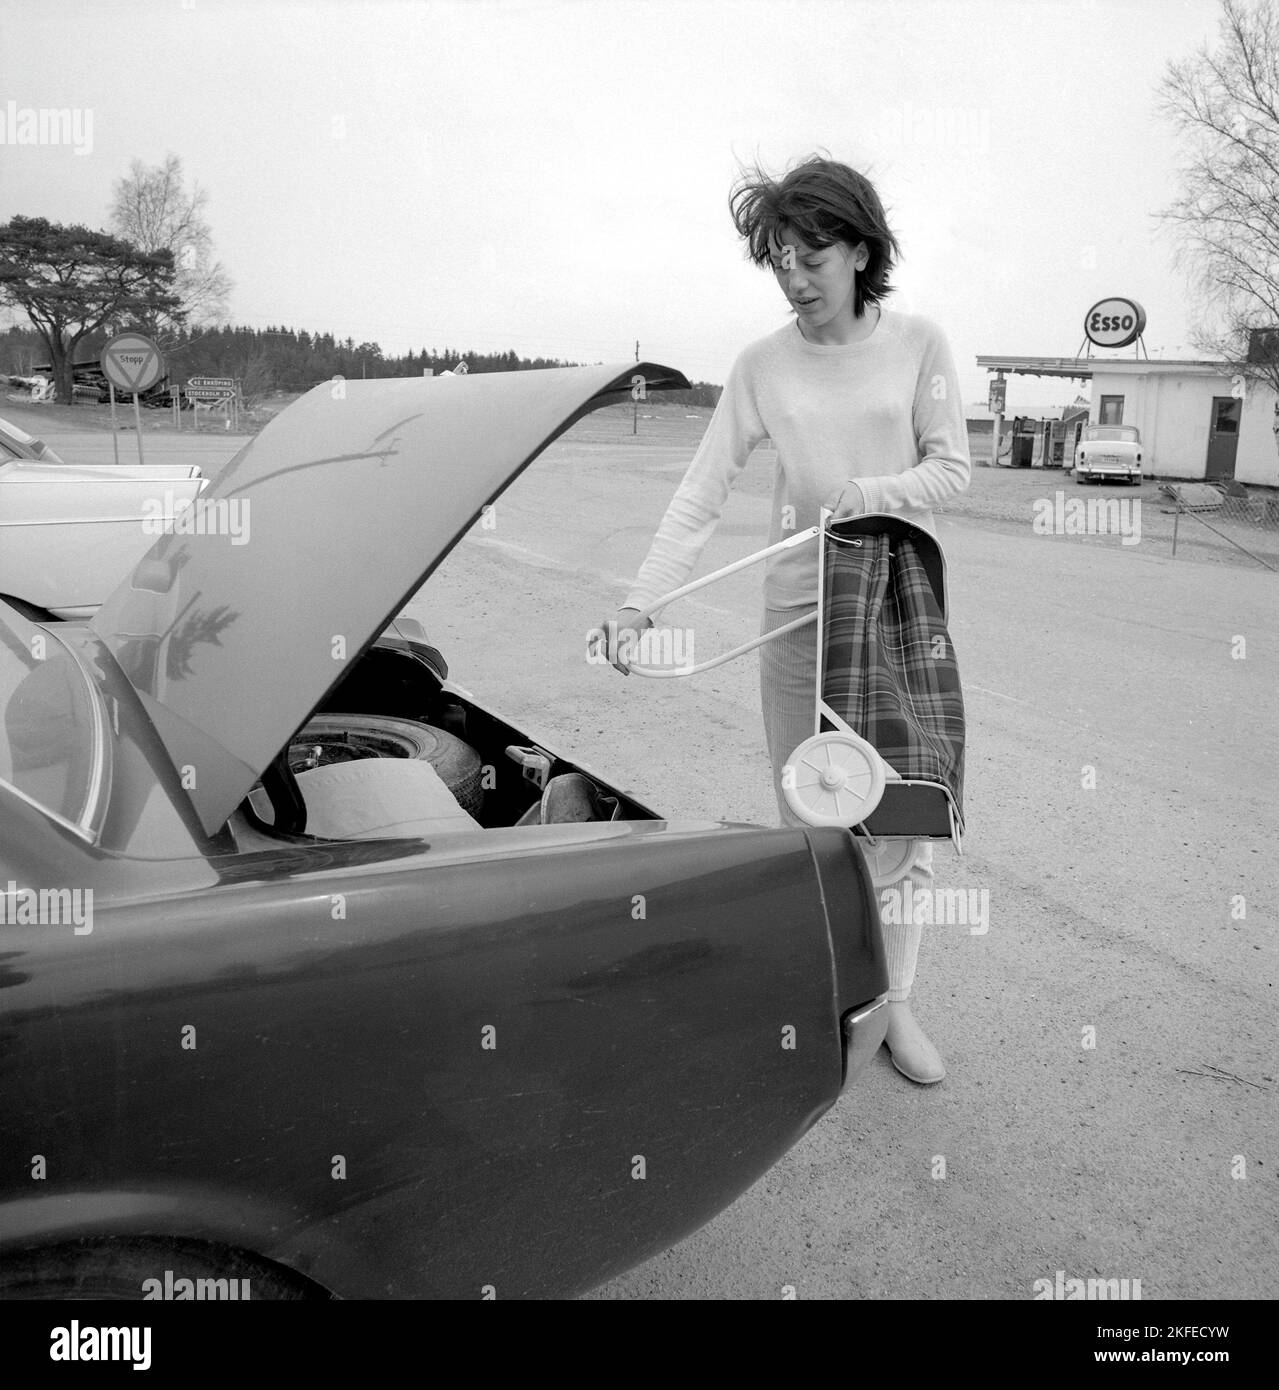 Einkaufen in der 1960s. Eine Dame hat ihr Auto im Supermarkt geparkt und nimmt ihren Warenkorb auf dem Parkplatz heraus. Ein Neuheitsartikel, der ursprünglich aus den USA kam. Schweden april 14 1966 Conard Ref. 5236 Stockfoto